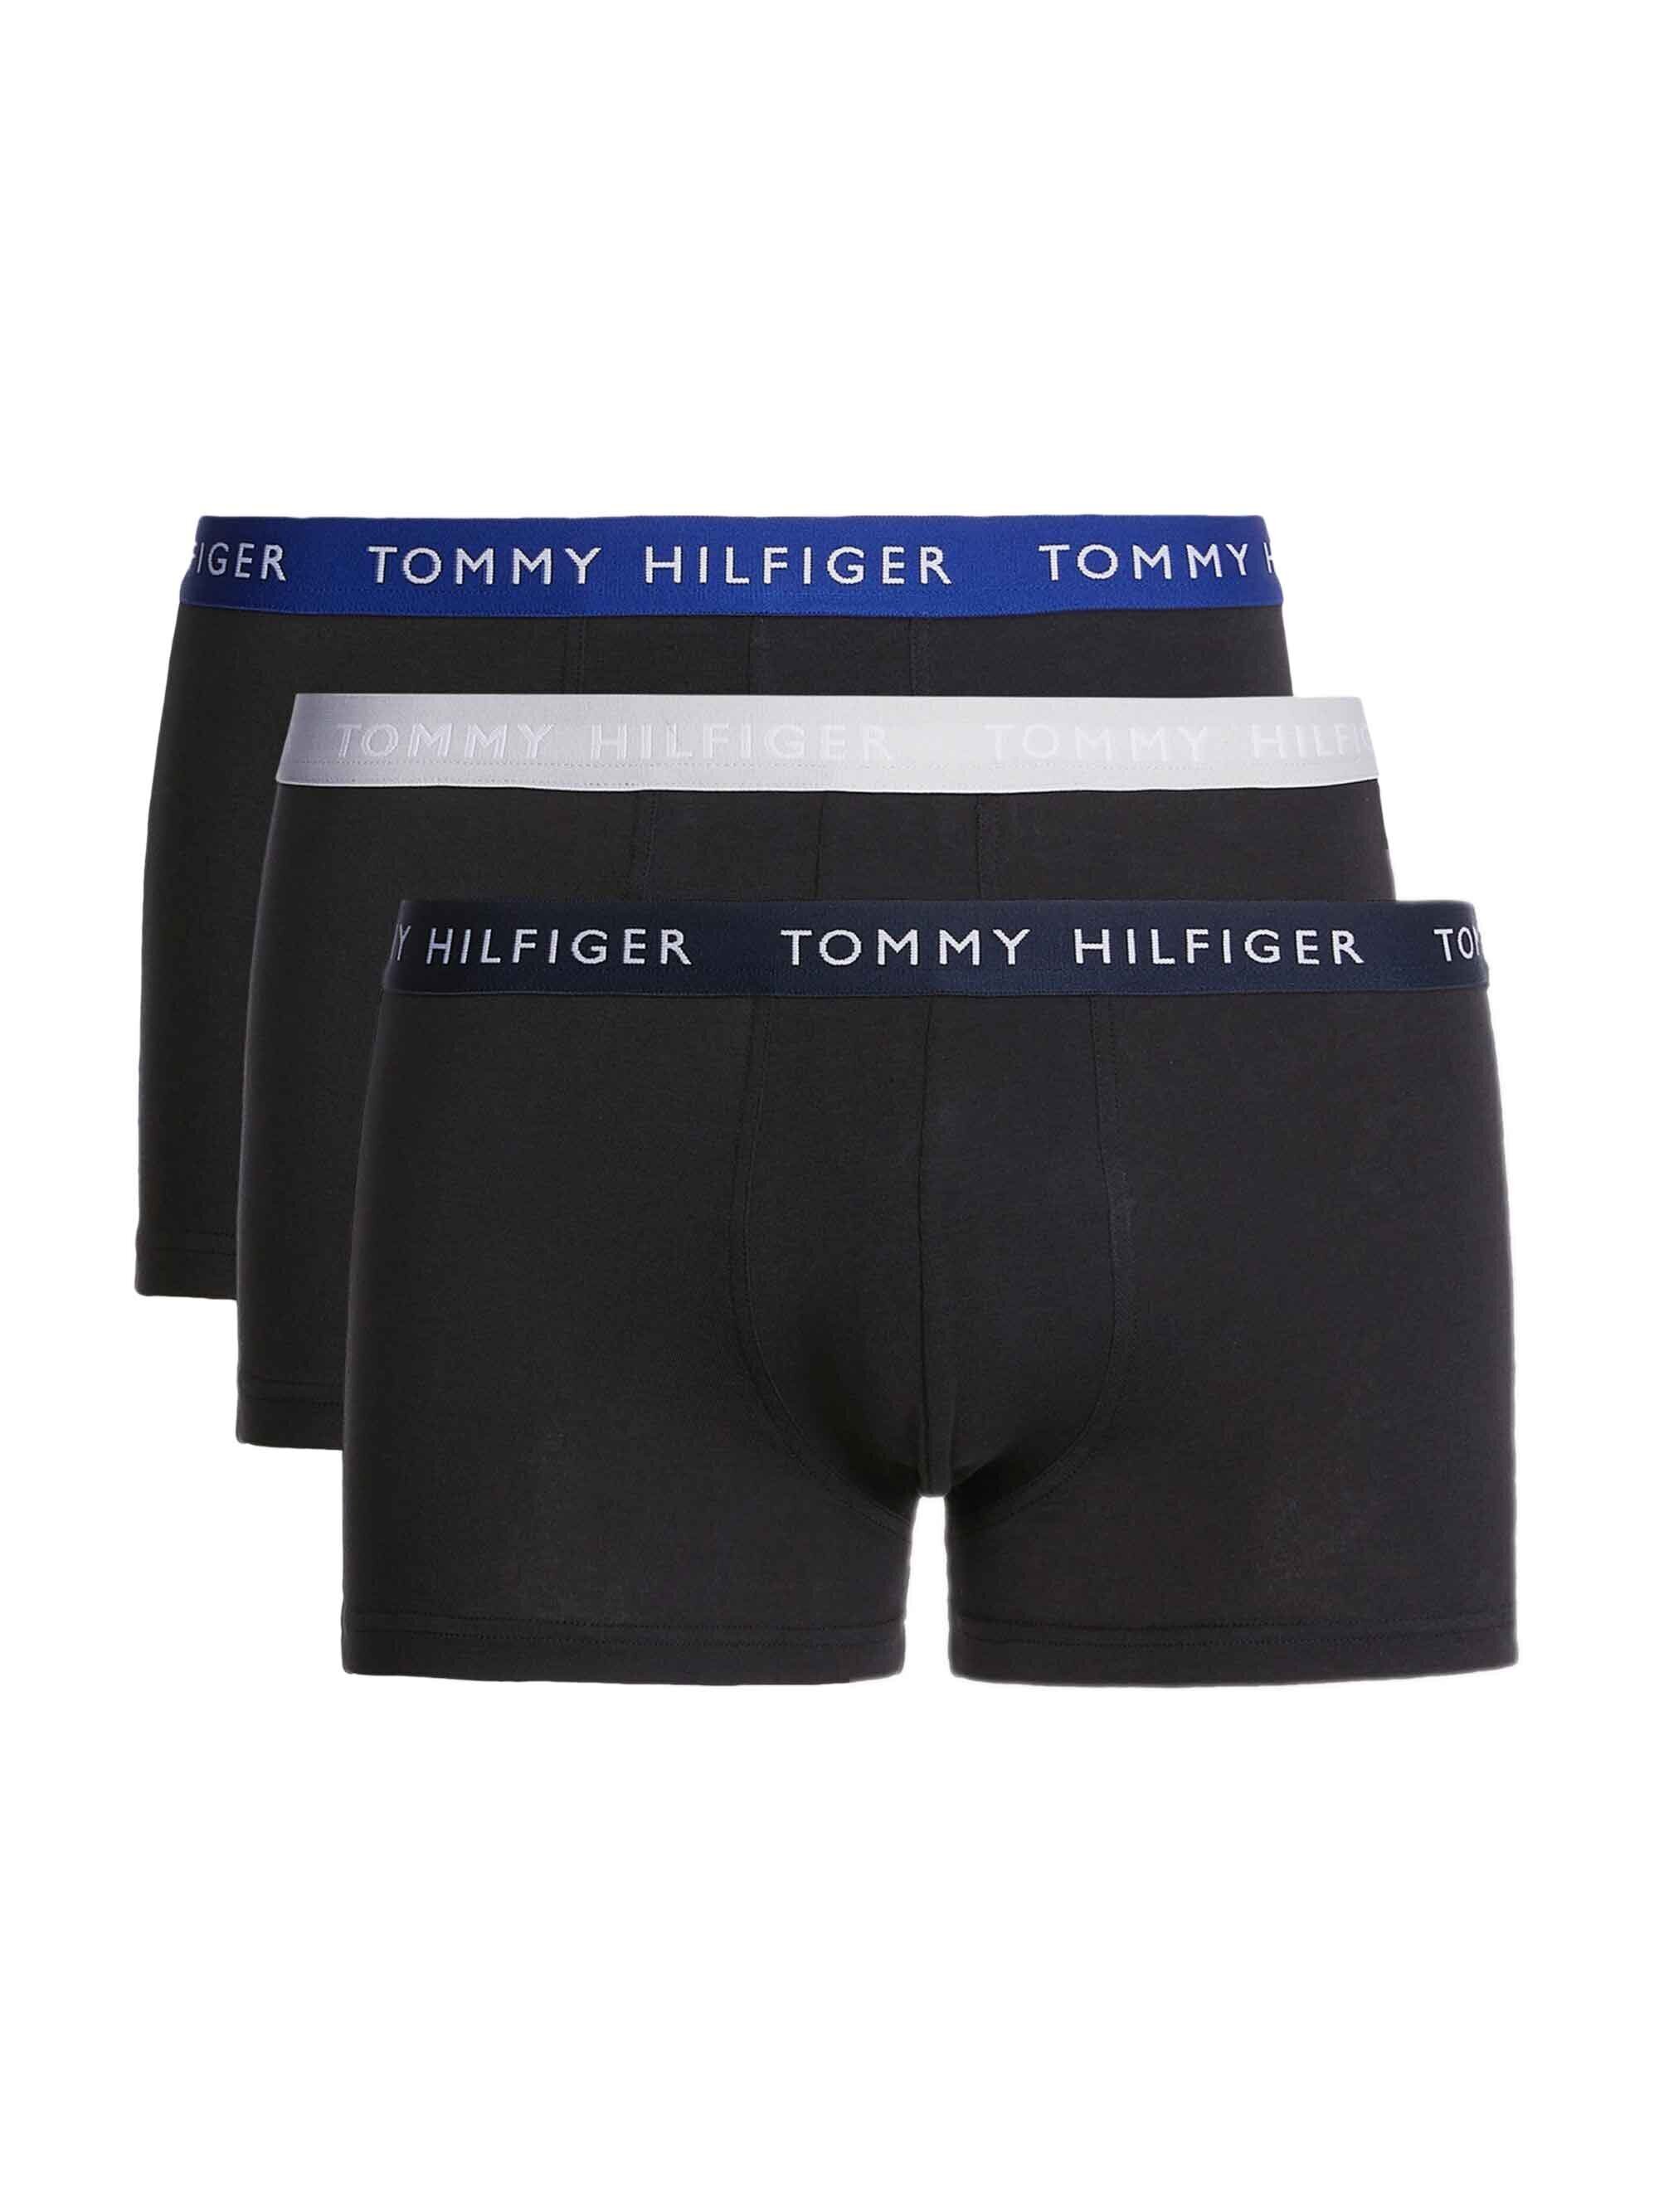 Meeste aluspüksid Tommy Hilfiger 50866, must, 3 tk. цена | kaup24.ee